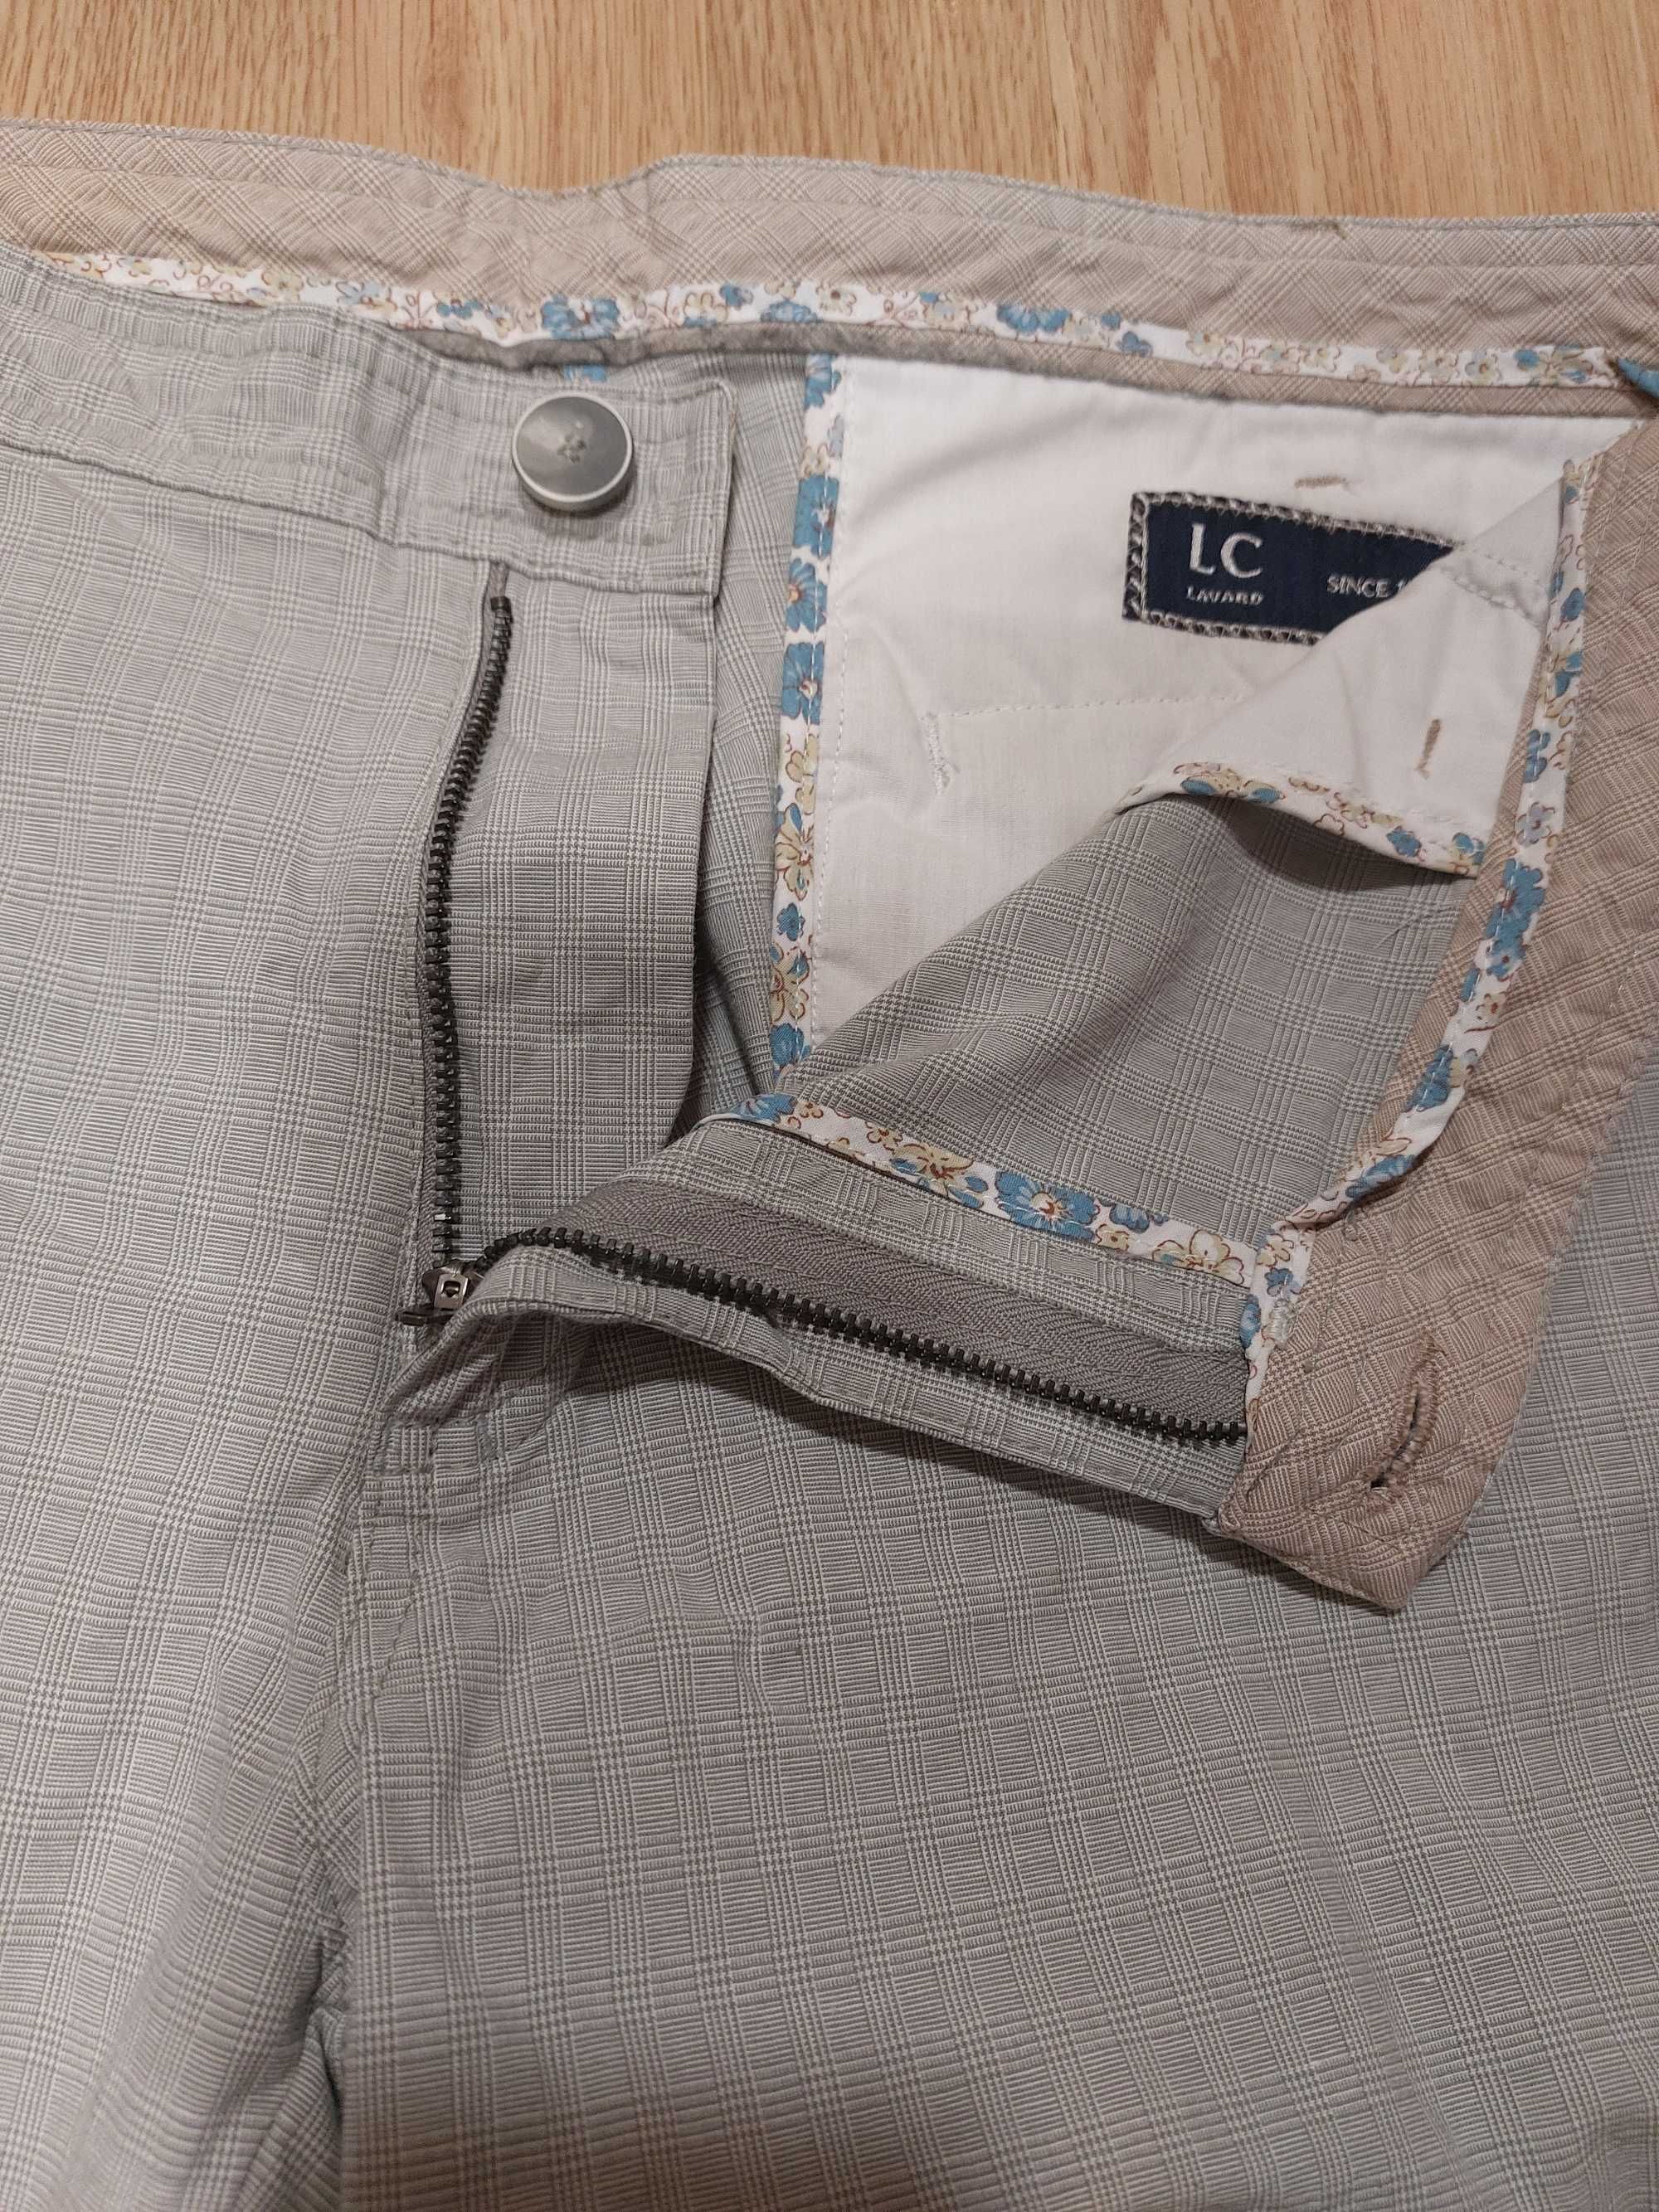 Spodnie chino marki Lavard jasne w kratkę